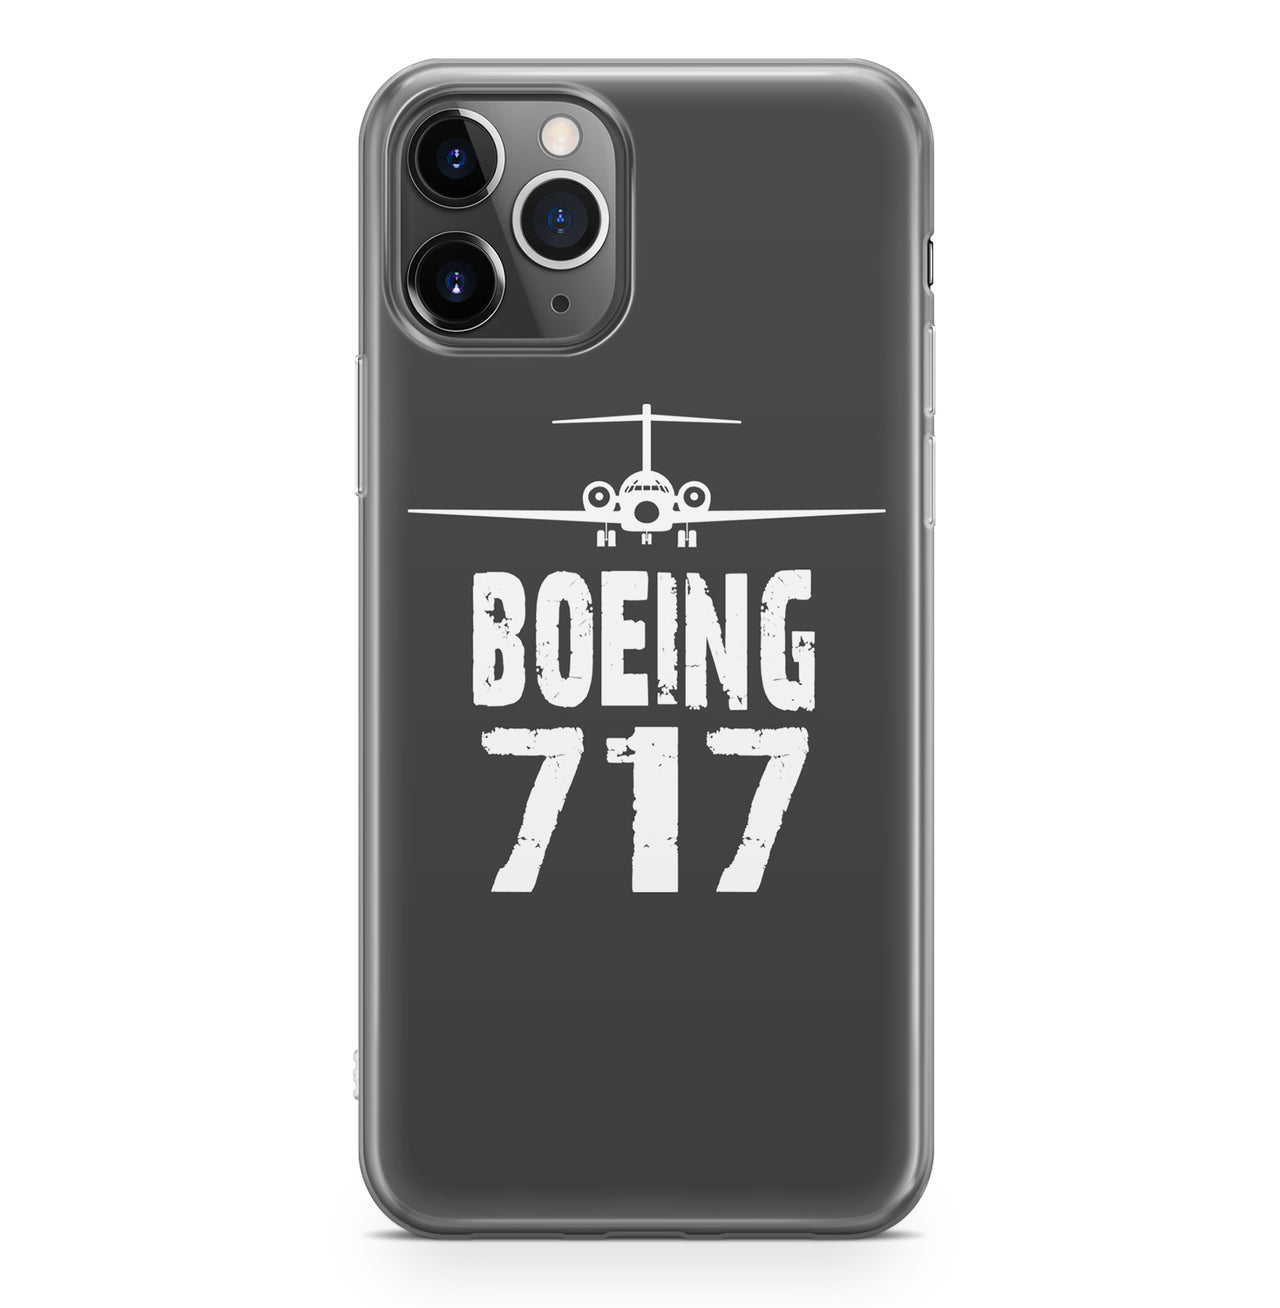 Boeing 717 & Plane Designed iPhone Cases